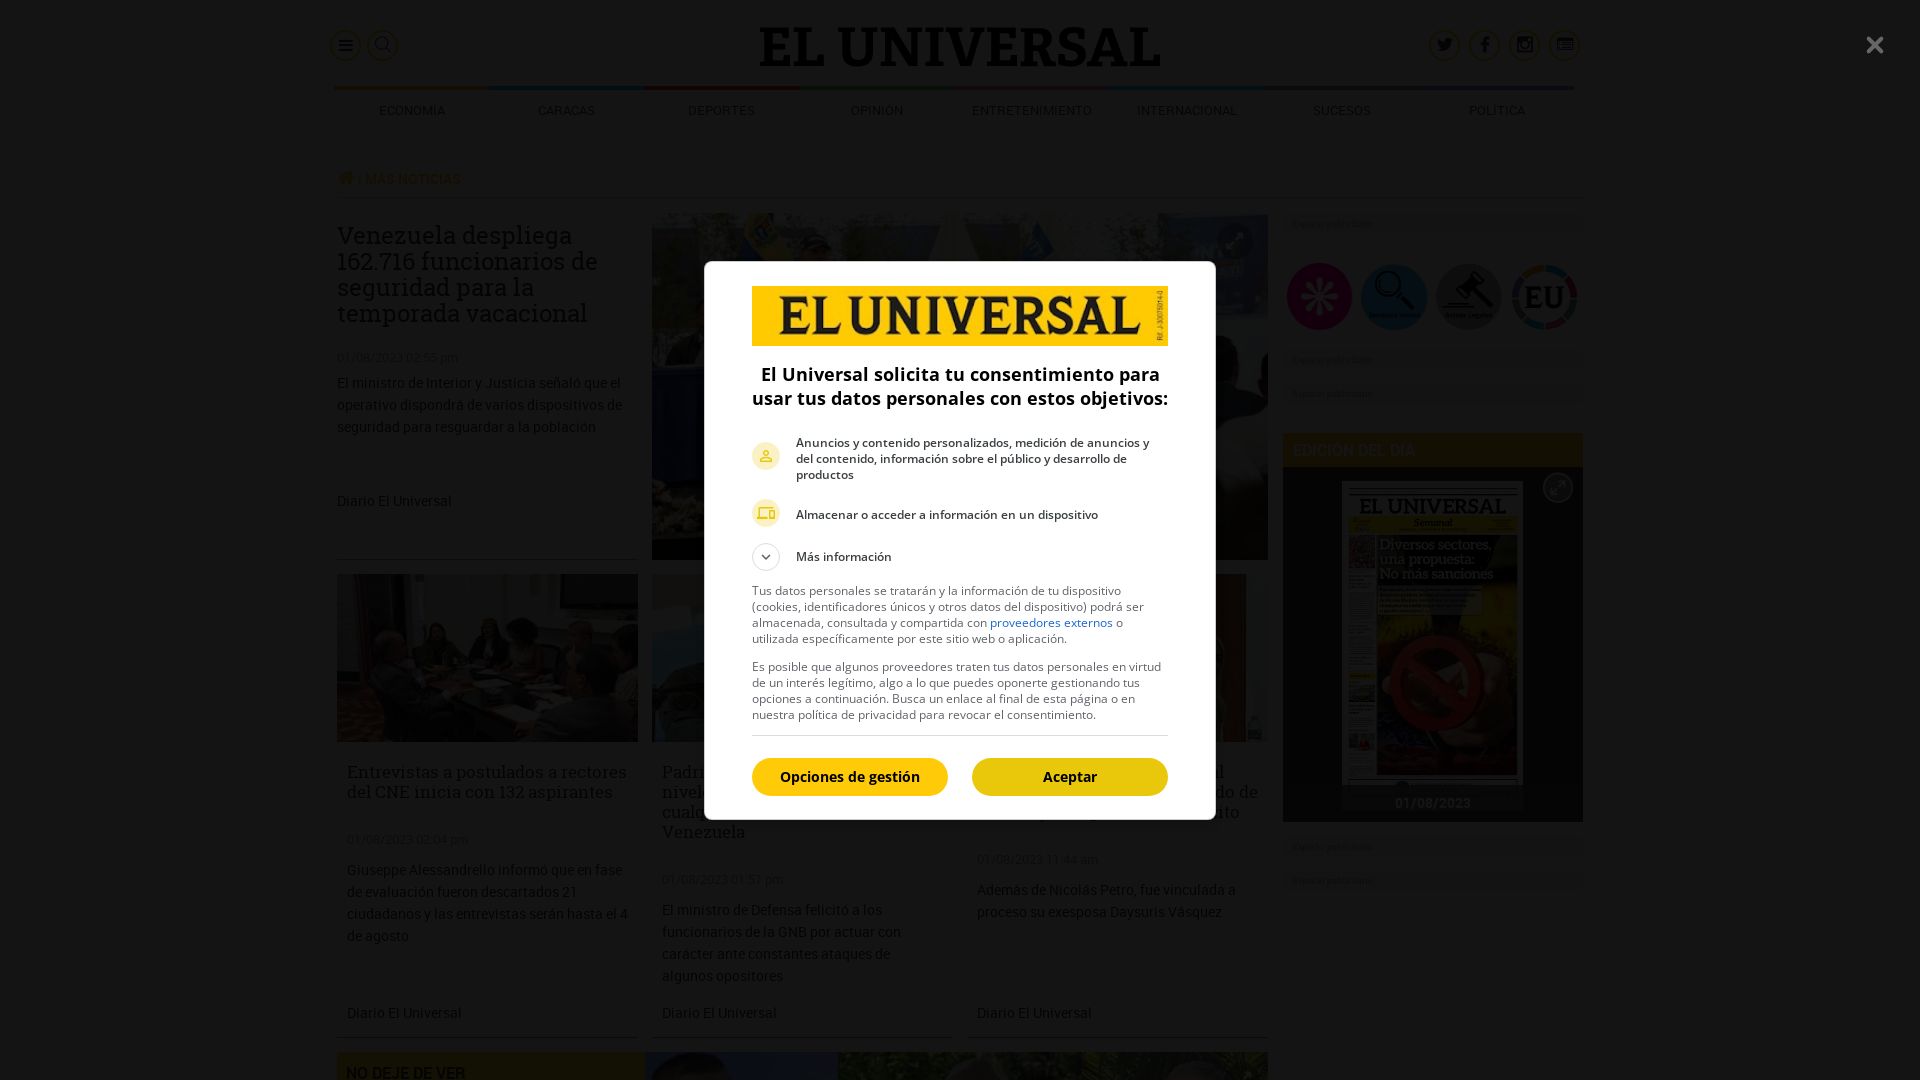 Website status eluniversal.com is   ONLINE